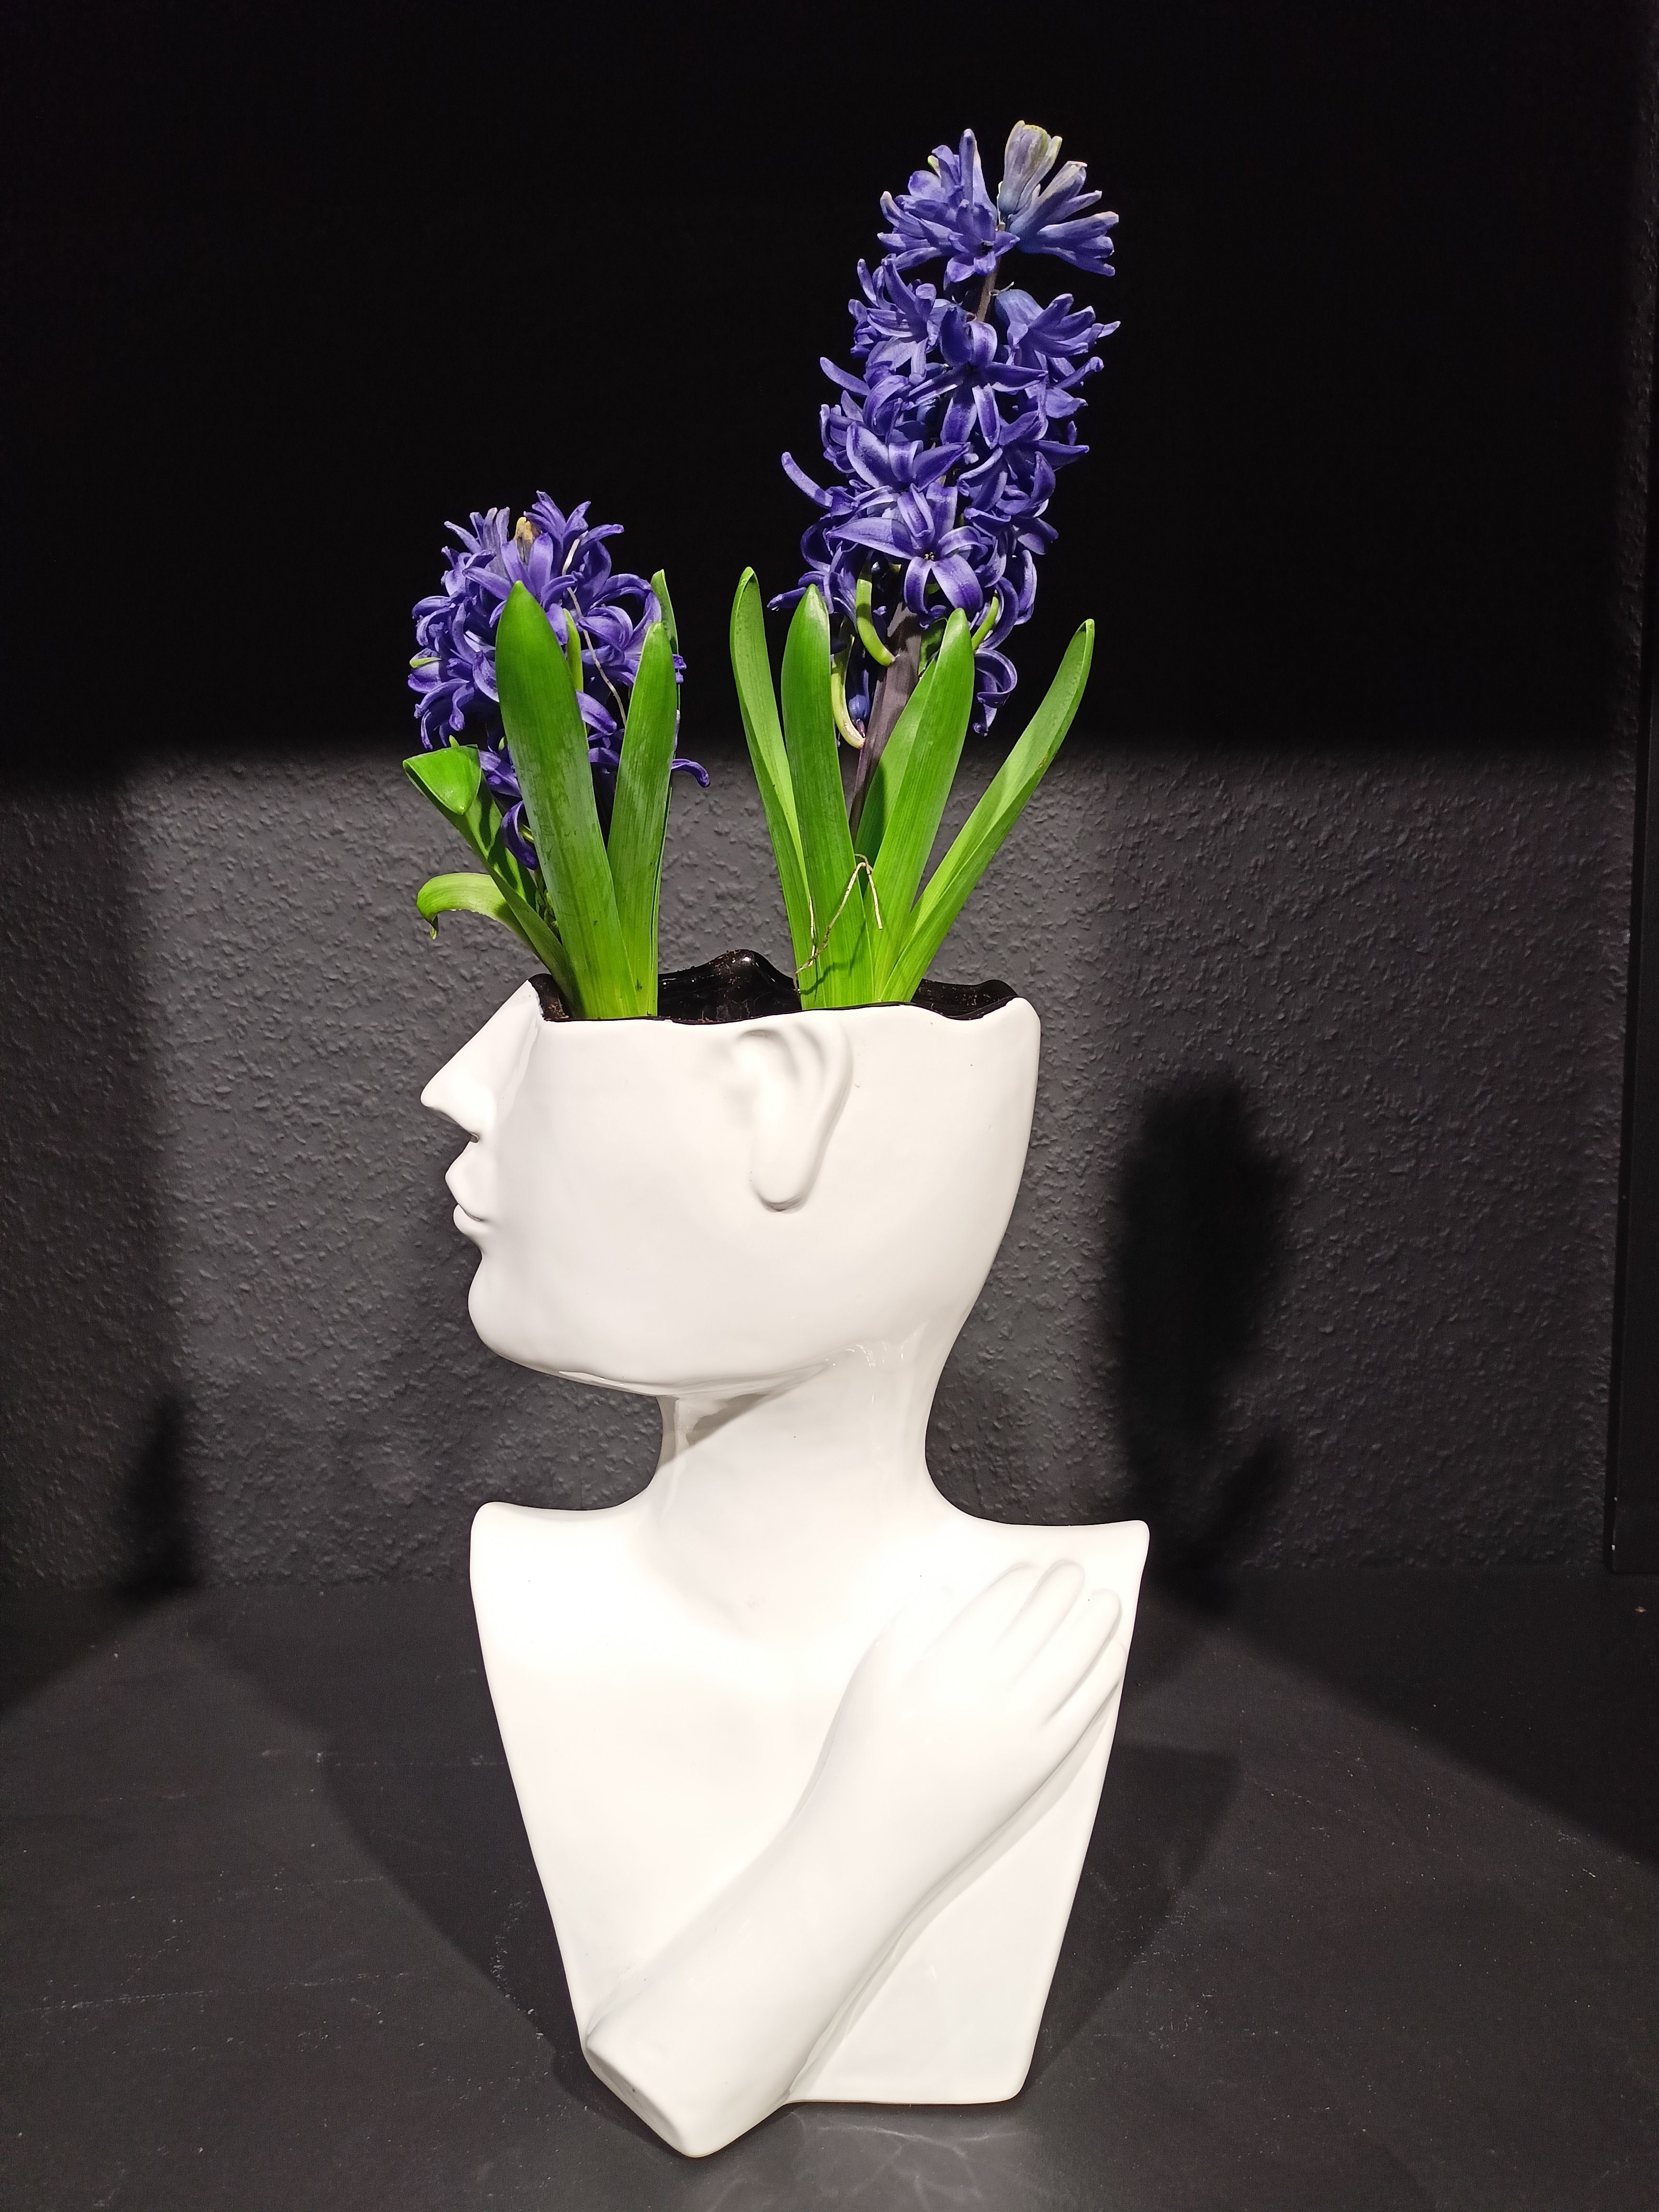 GlasArt Dekovase Vase 26 cm Keramik Gesicht Wohnzimmer Blumenvase weiß Vase